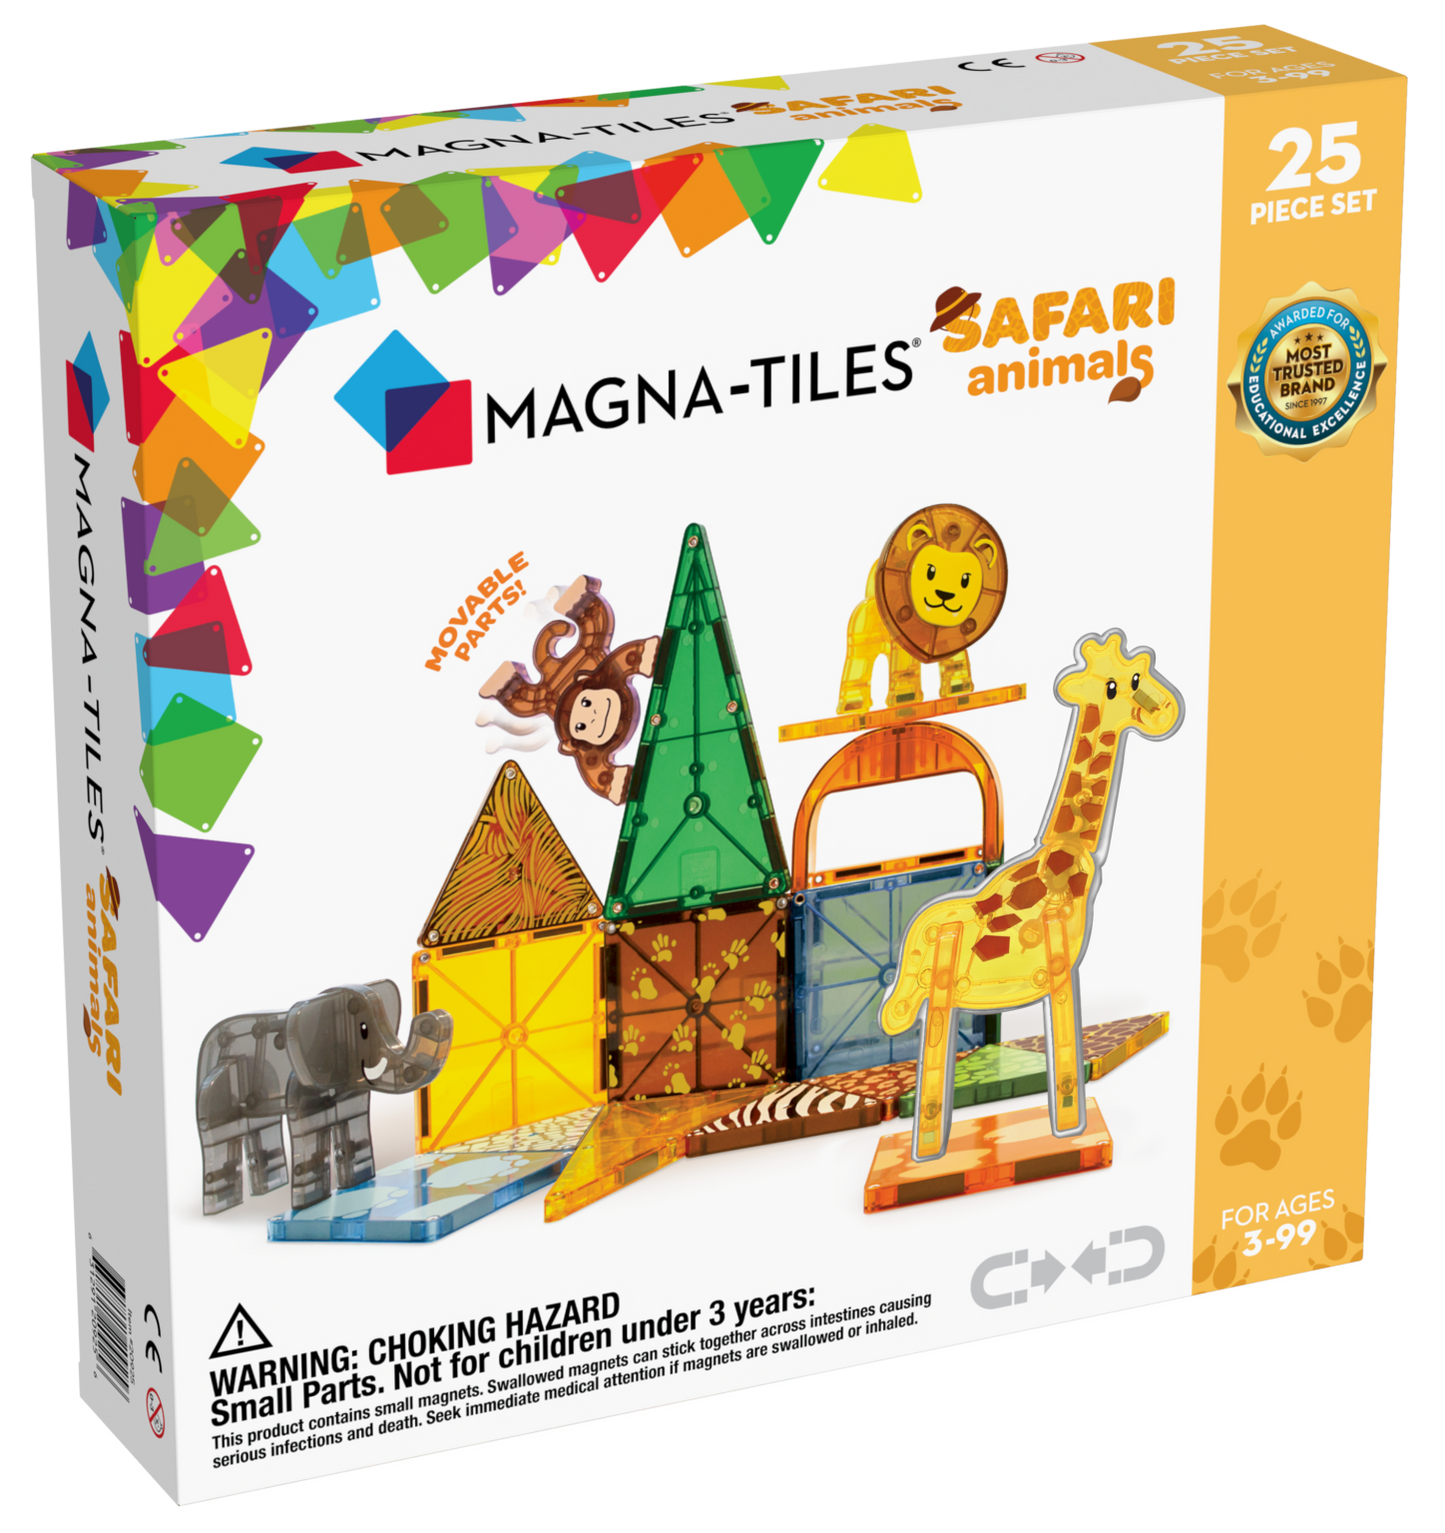 Safari Animals 25-Piece Set Magna-Tiles